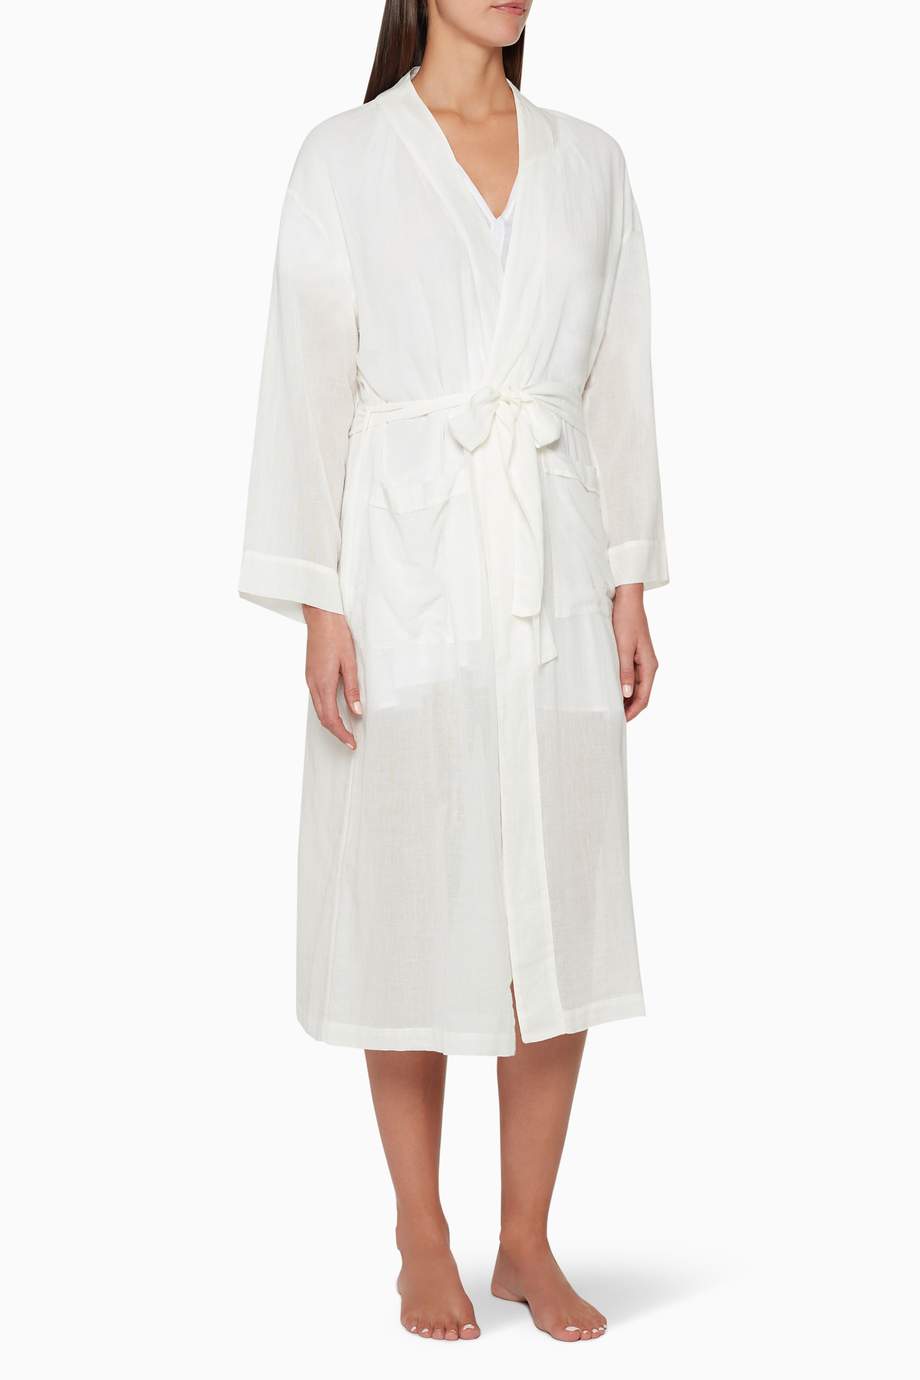 Shop Pour Les Femmes White Long Gauze Robe for Women | Ounass UAE